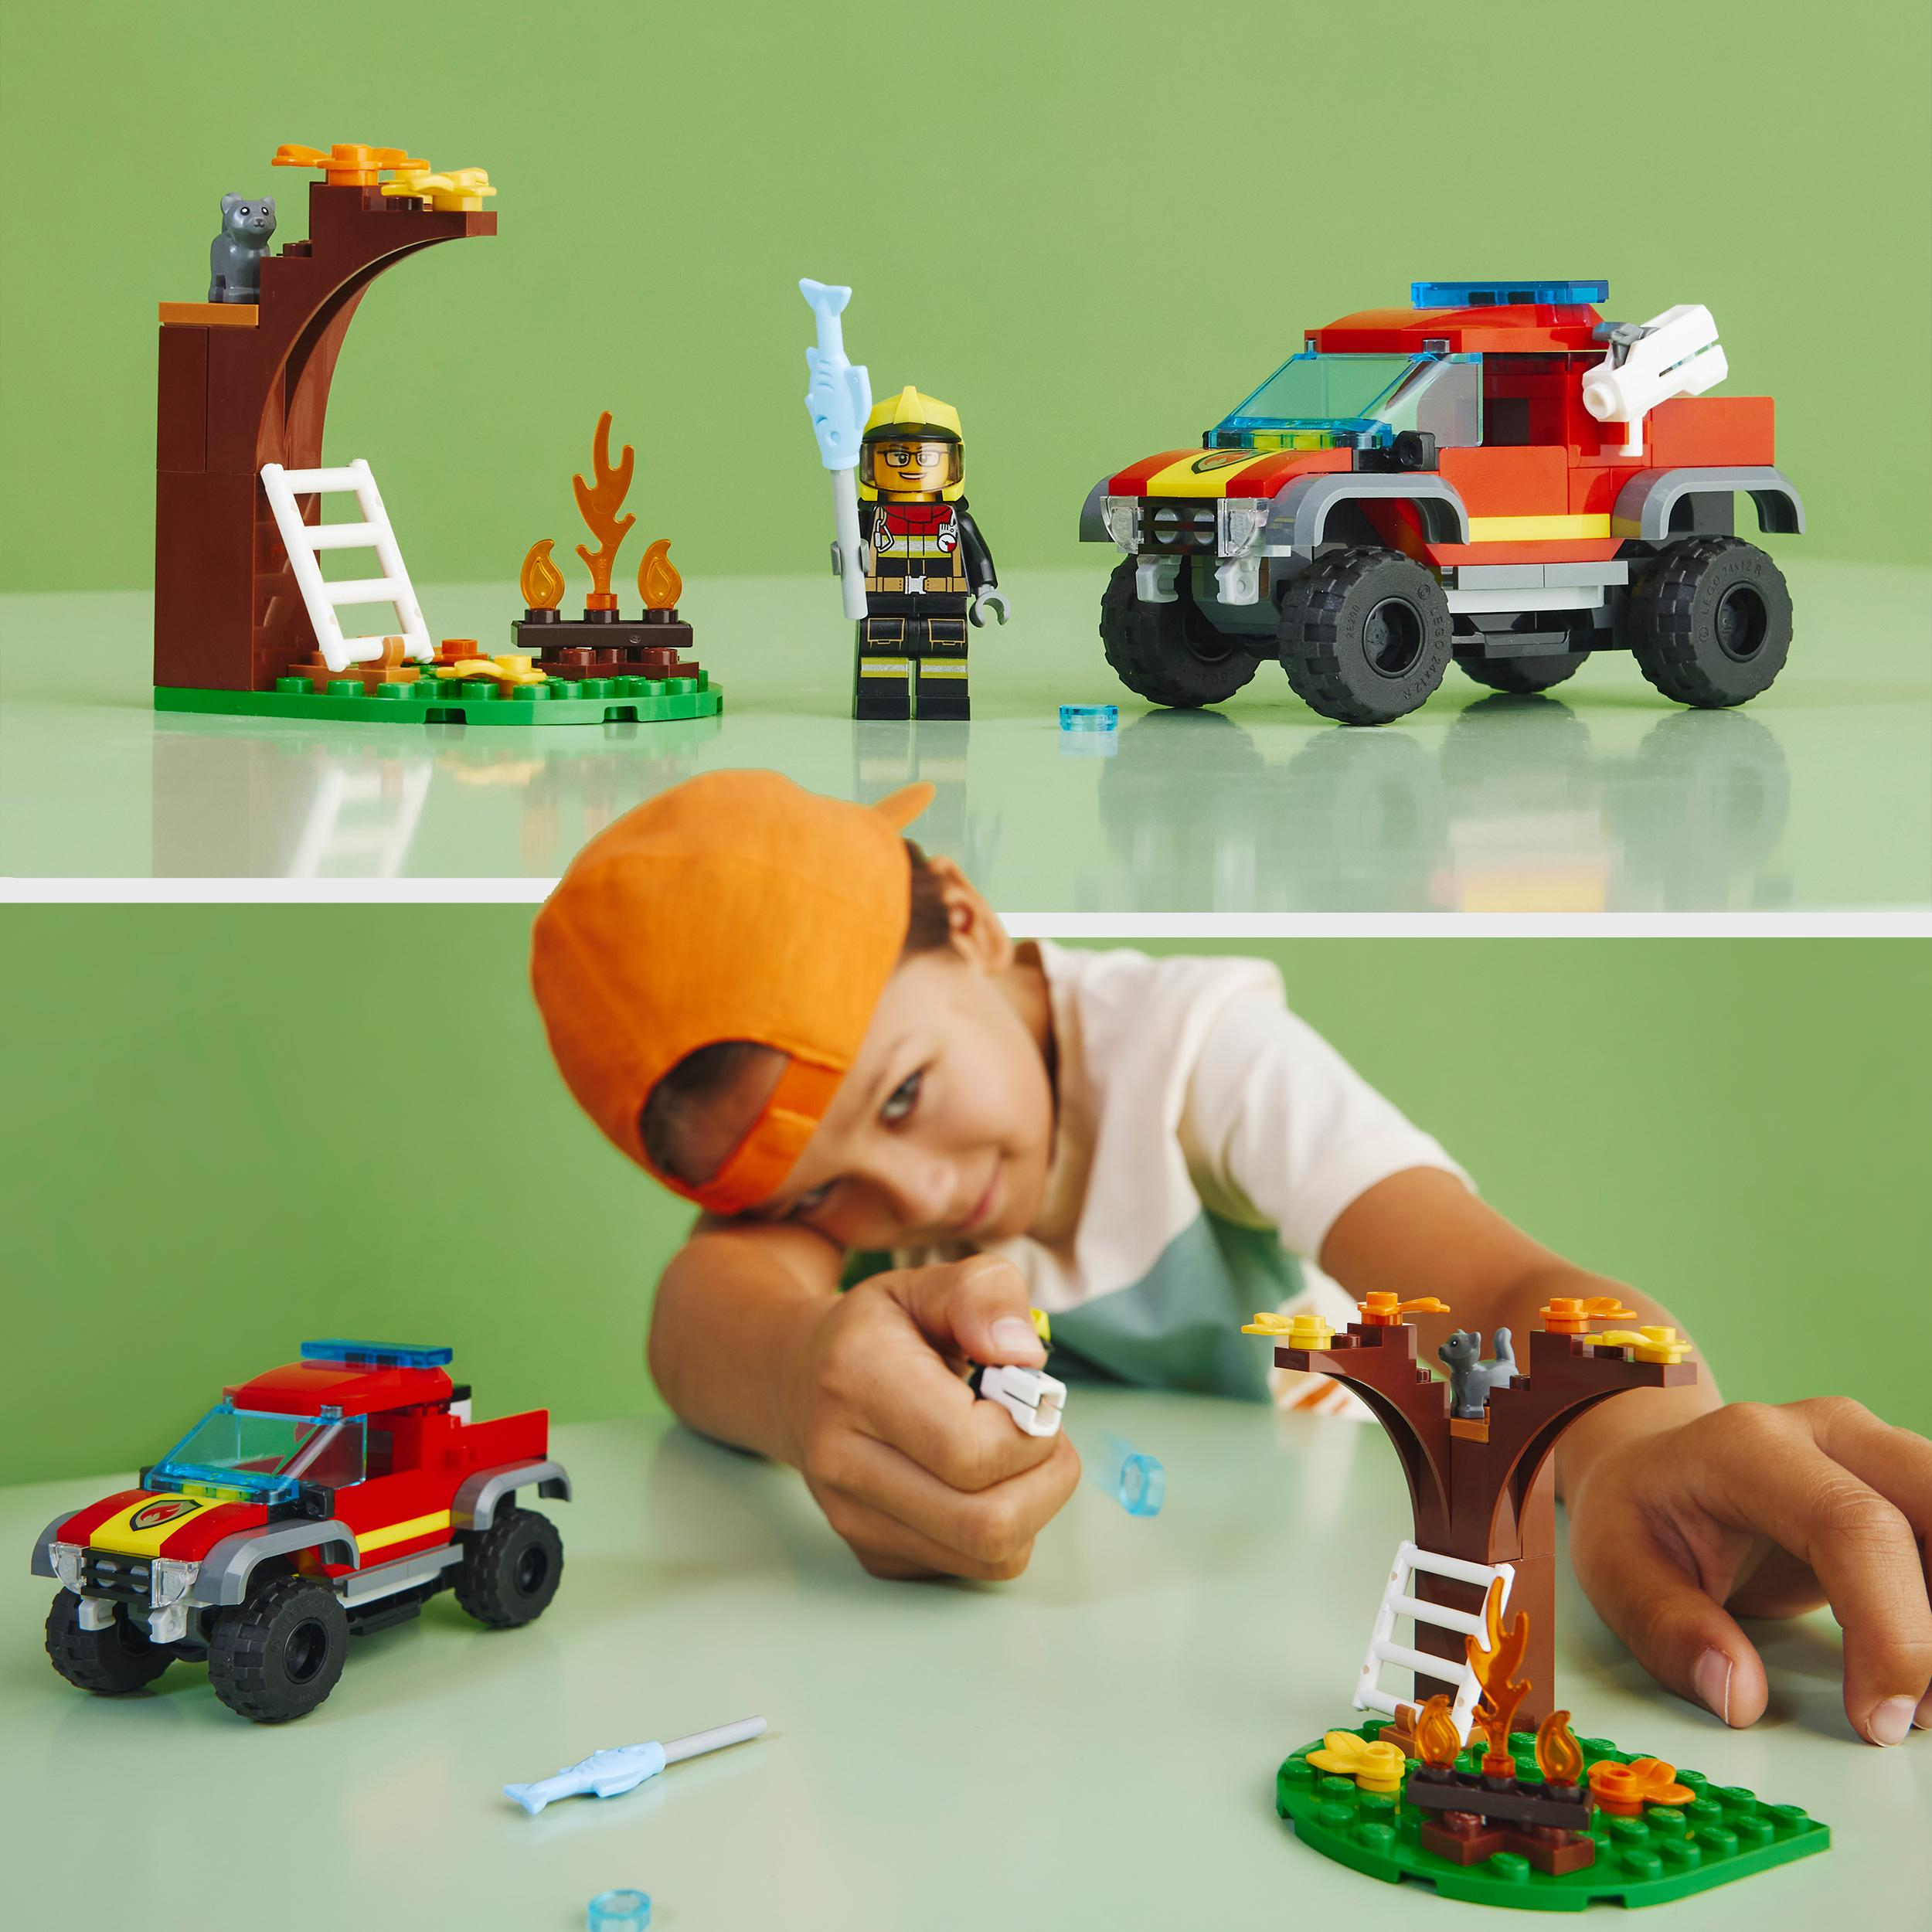 LEGO City Feuerwehr-Pickup Bausatz, Mehrfarbig 60393